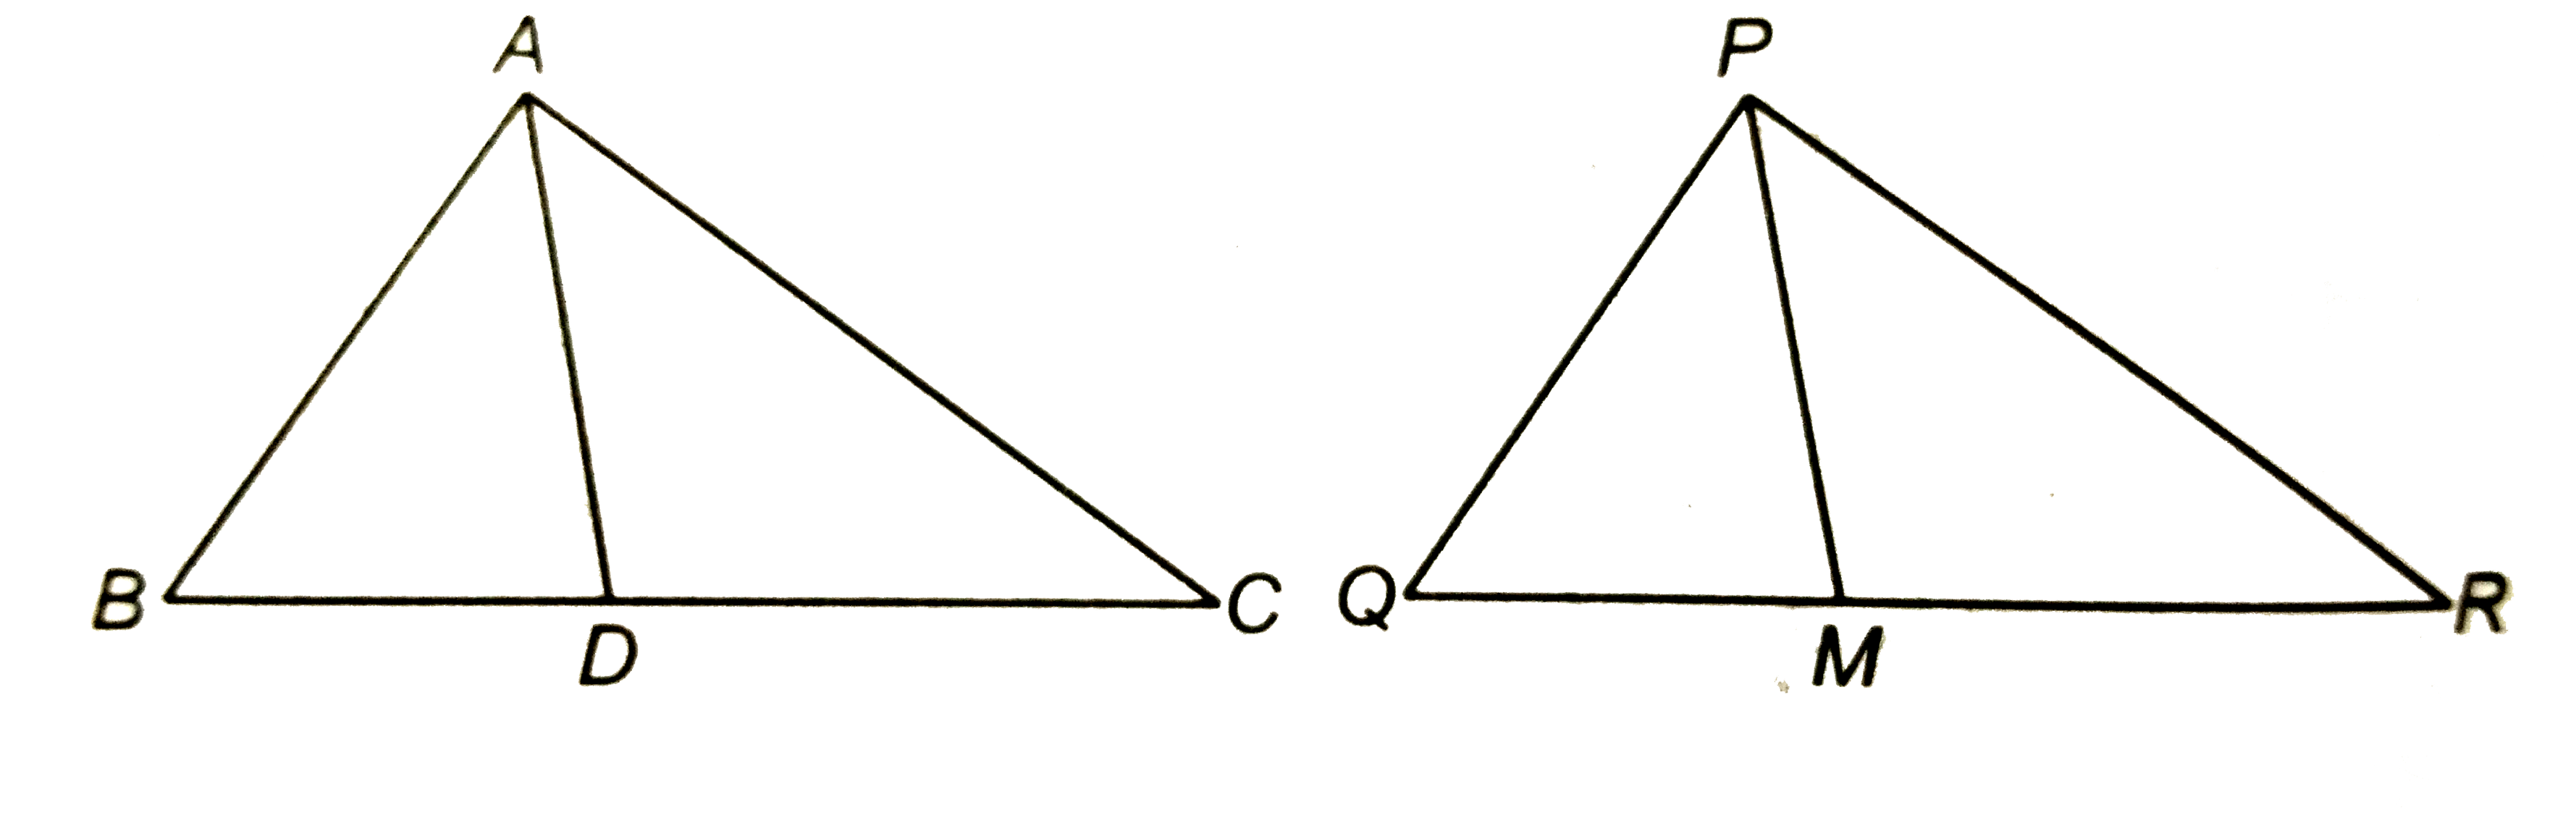 एक त्रिभुज ABC की भुजाये AB और BC तथा मध्यिका AD एक अन्य त्रिभुज PQR कि क्रमशः भुजाओ PQ और QR तथा मध्यिका PM के समानुपाती है (देखिये आकृति) दर्शाइए कि DeltaABC~DeltaPQR है